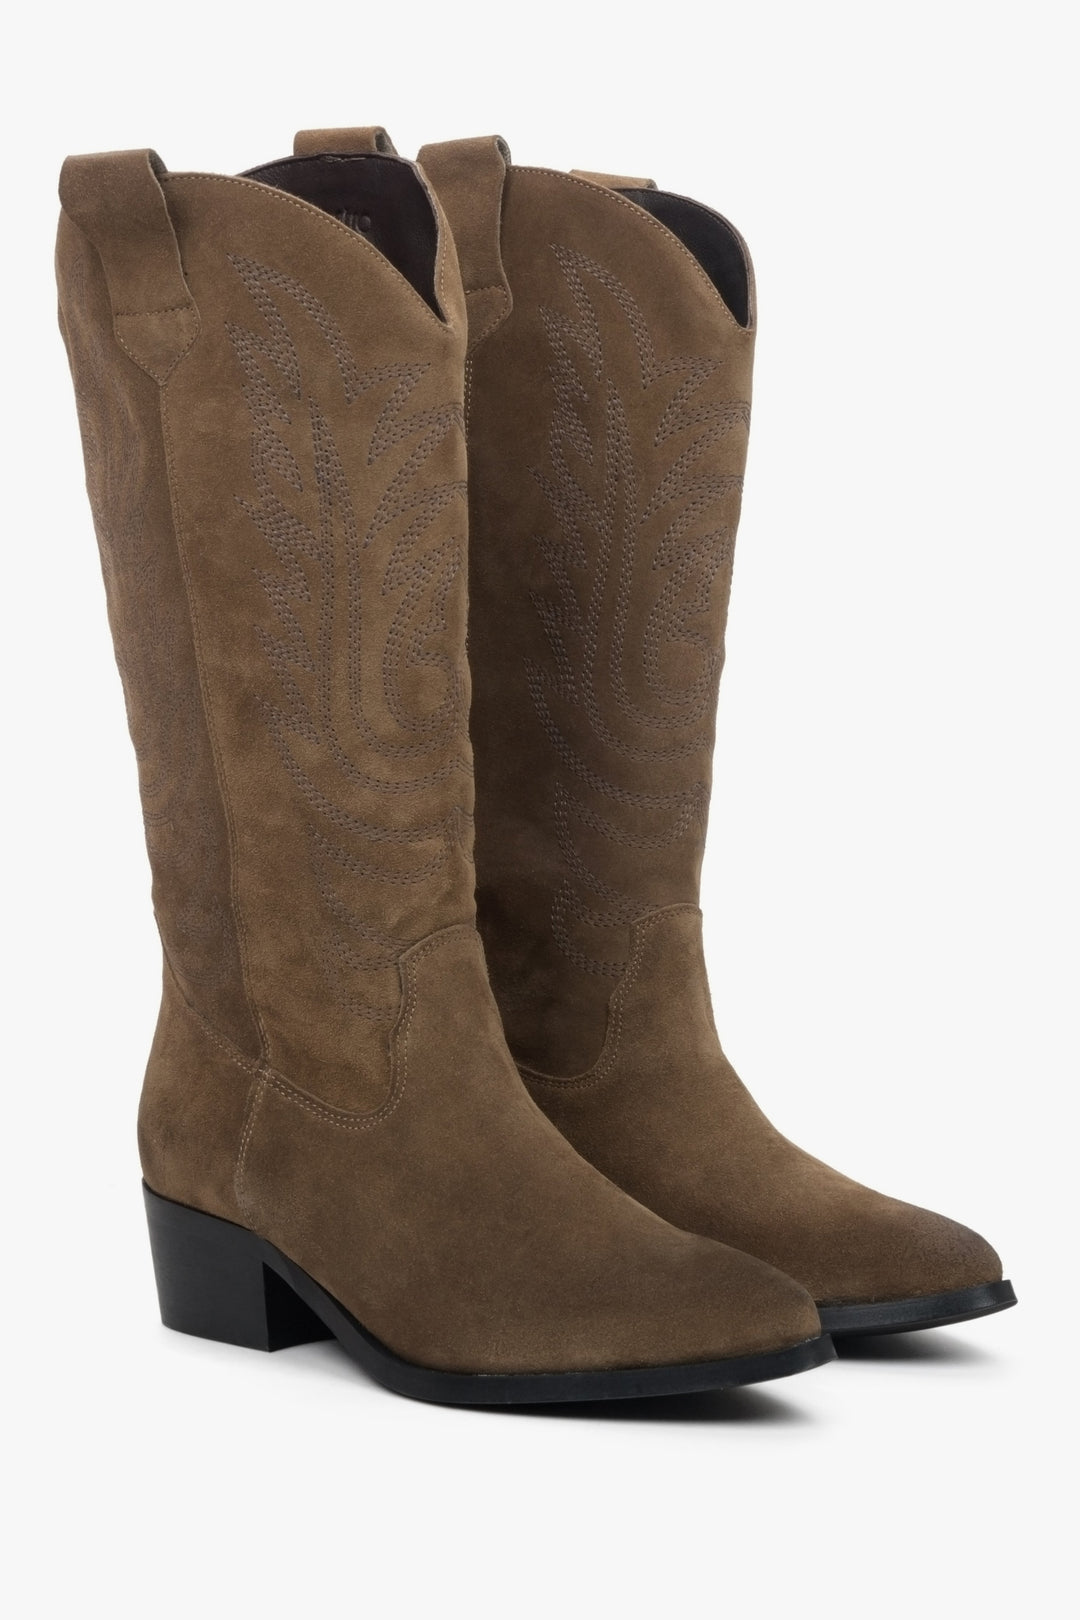 Women's brown suede cowboy boots by Estro.